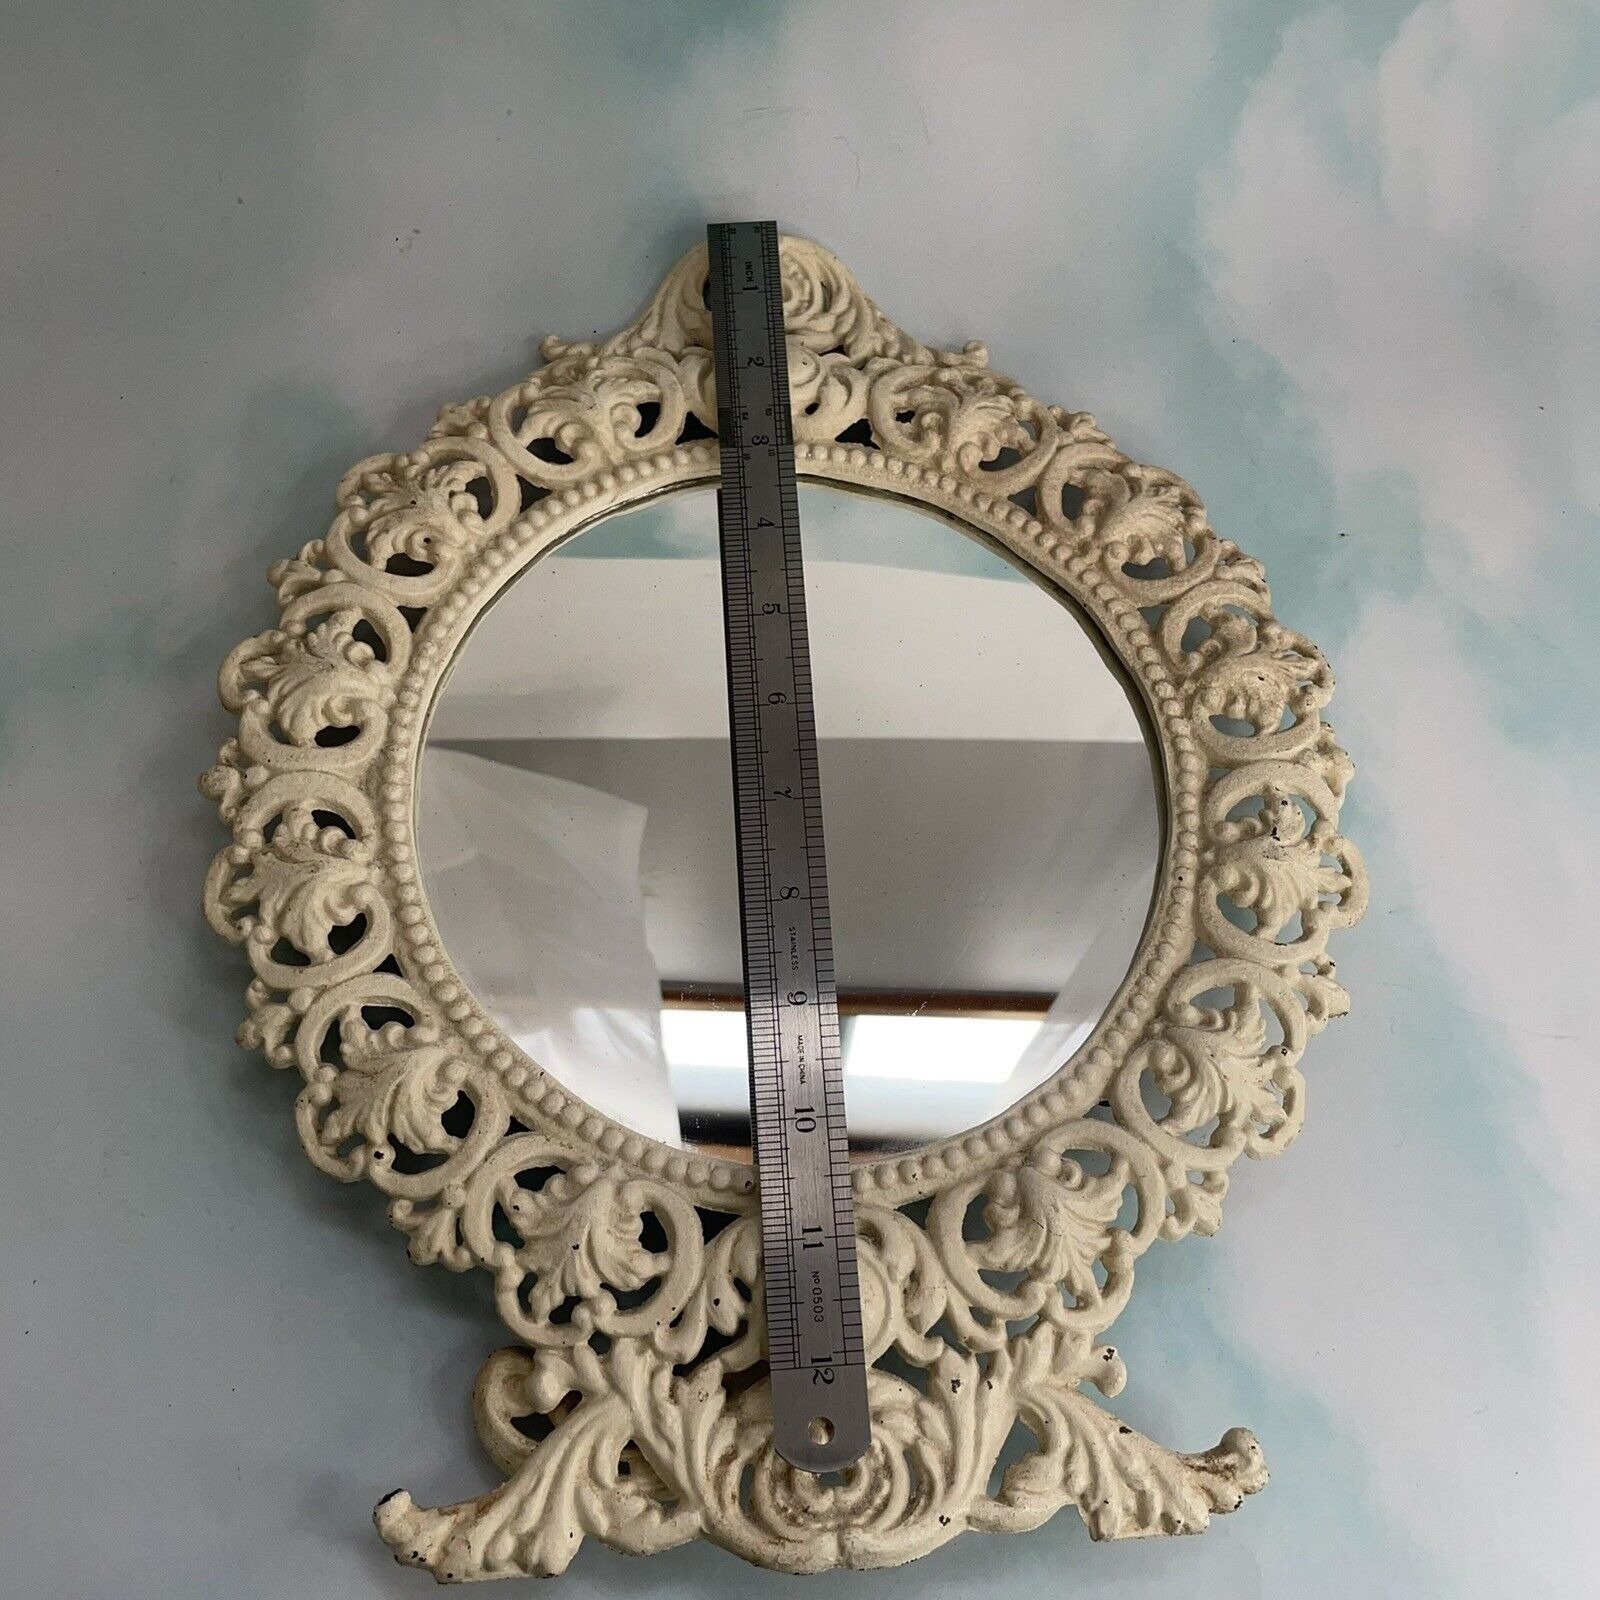 White Tabletop Vanity Mirror - Victoria Range